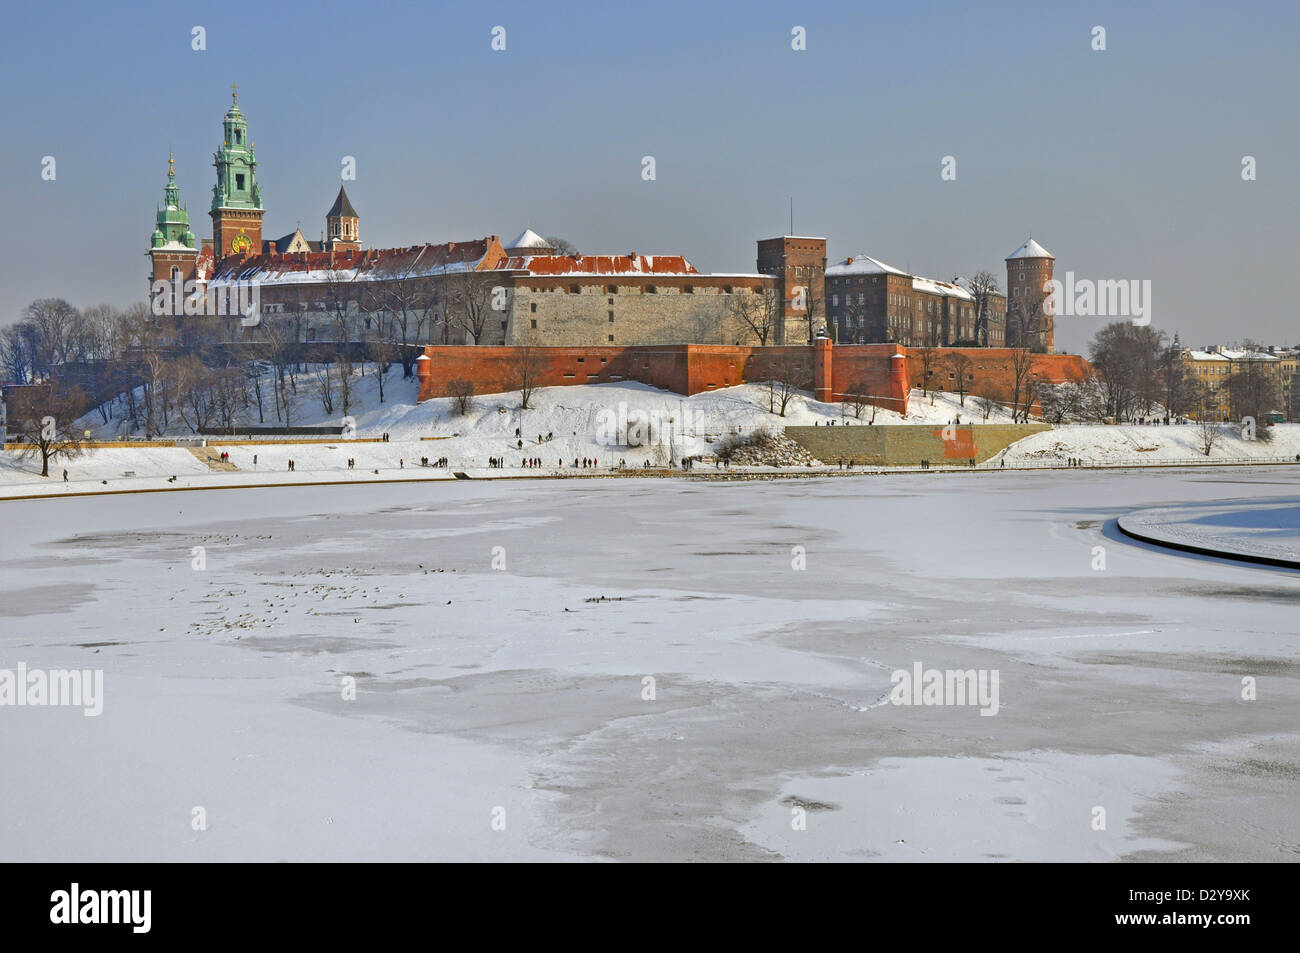 Historischen königlichen Schloss Wawel in Krakau, Polen, mit gefrorenen Weichsel im Winter. Stockfoto